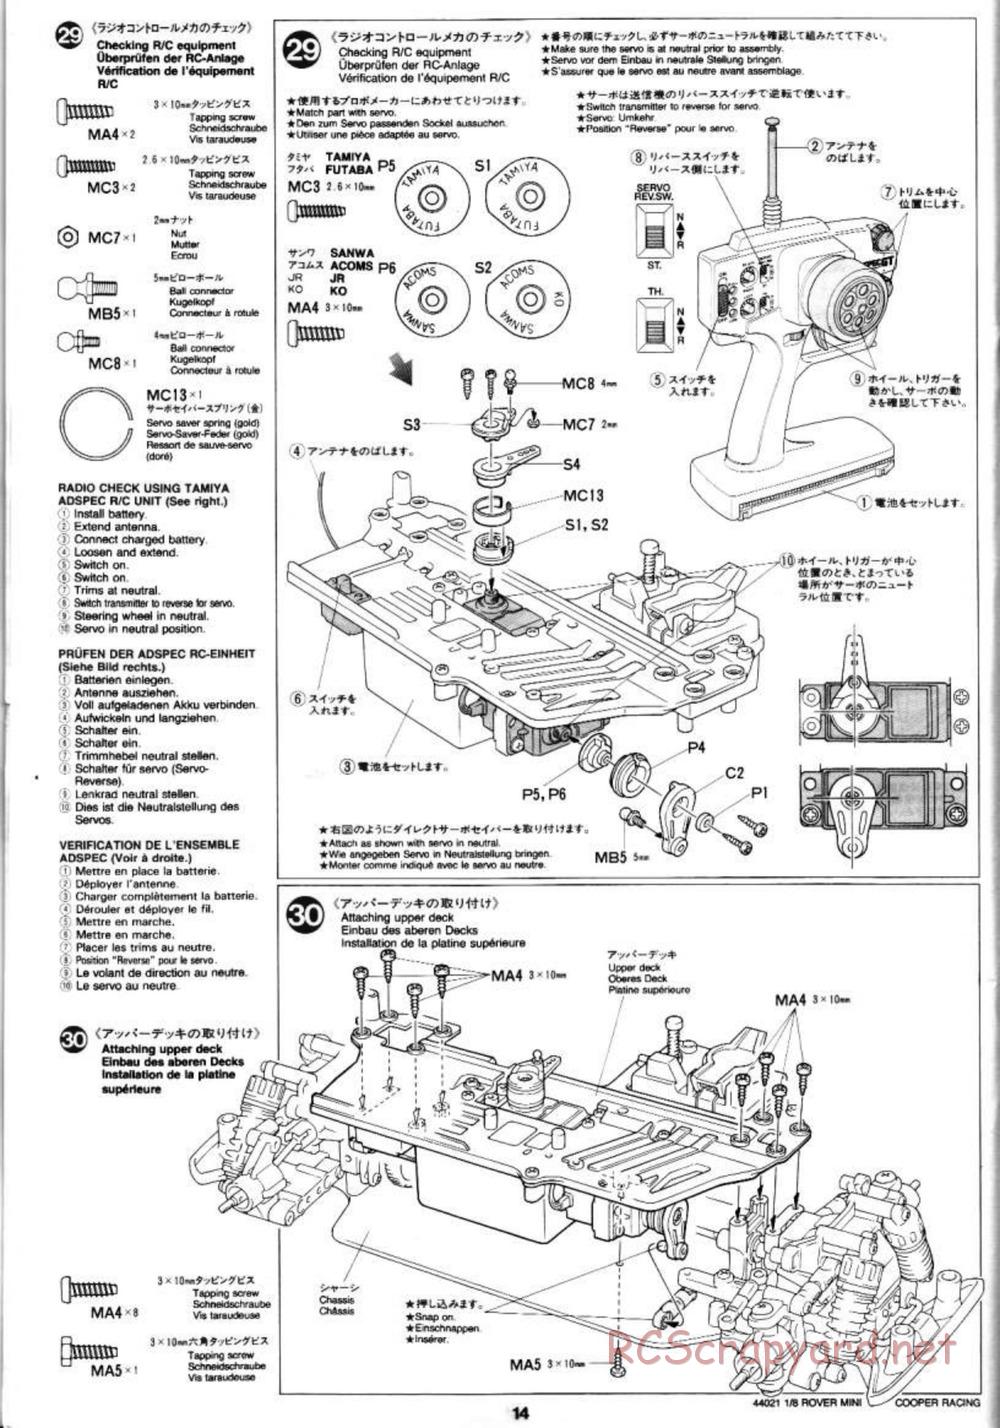 Tamiya - Rover Mini Cooper Racing - TG10 Mk.1 Chassis - Manual - Page 14